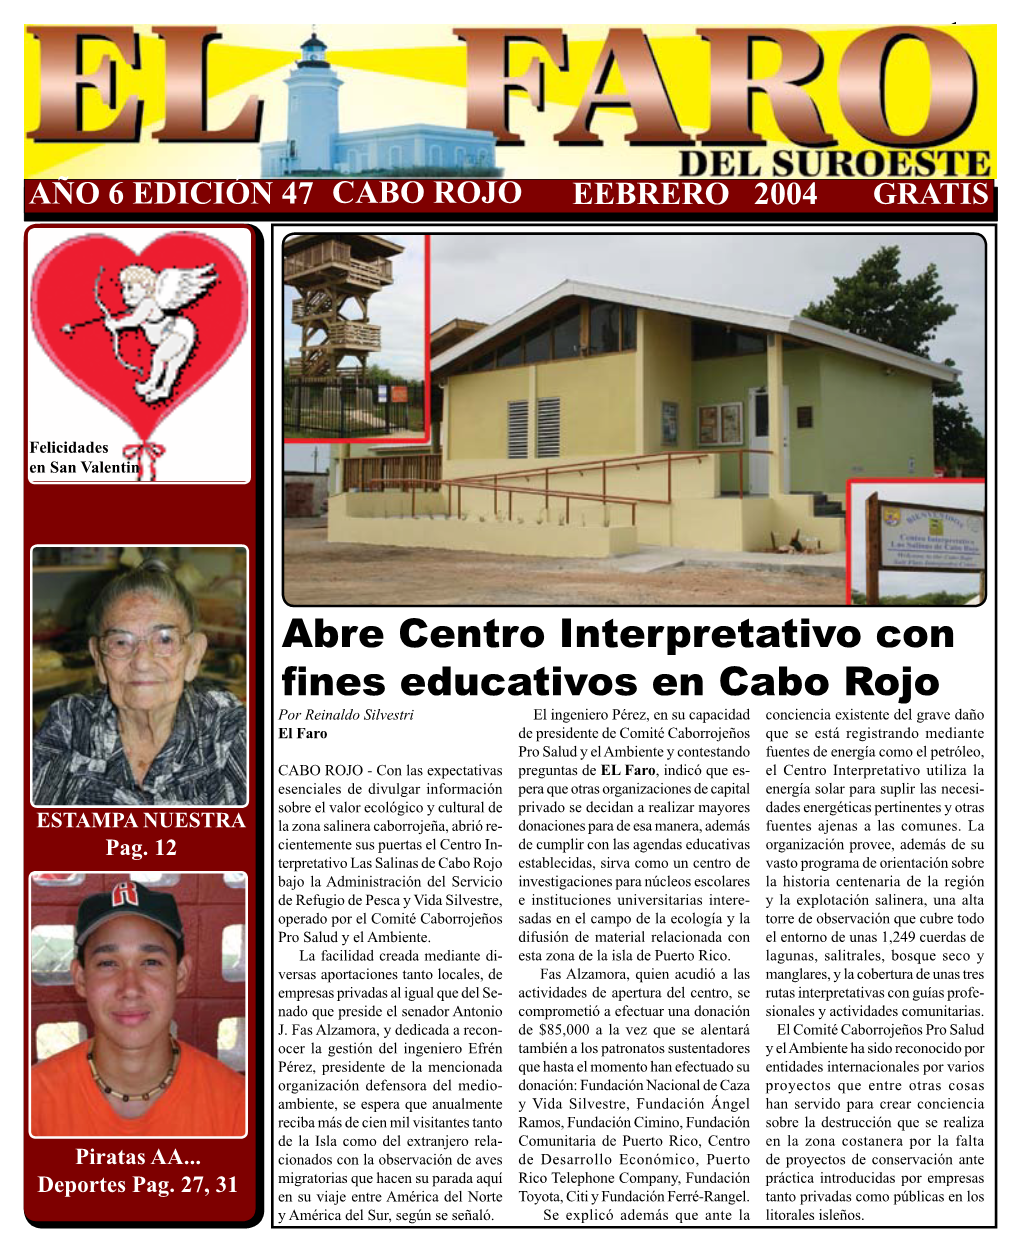 Abre Centro Interpretativo Con Fines Educativos En Cabo Rojo